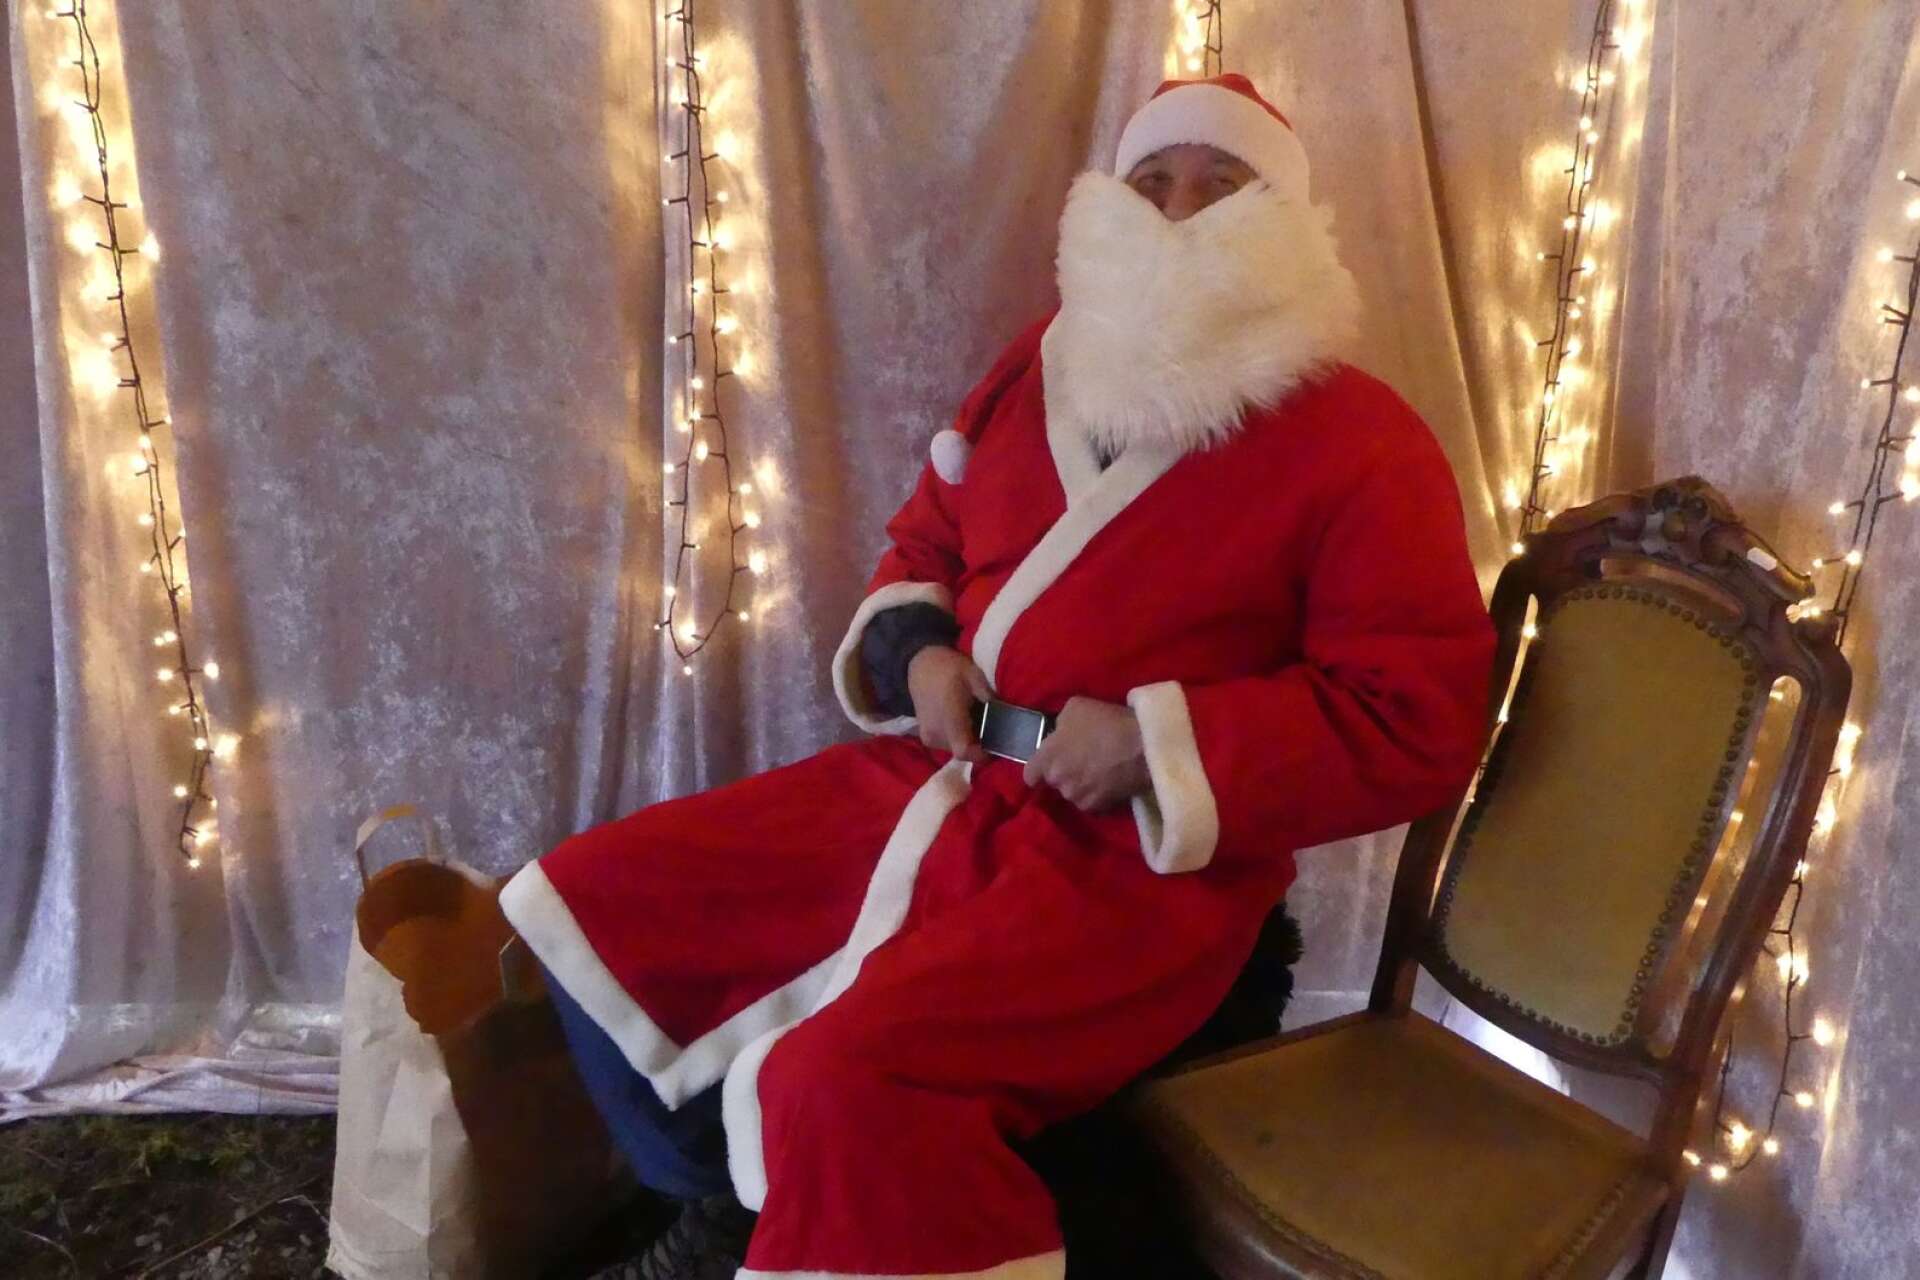 På logen satt jultomten för att prata med barnen.